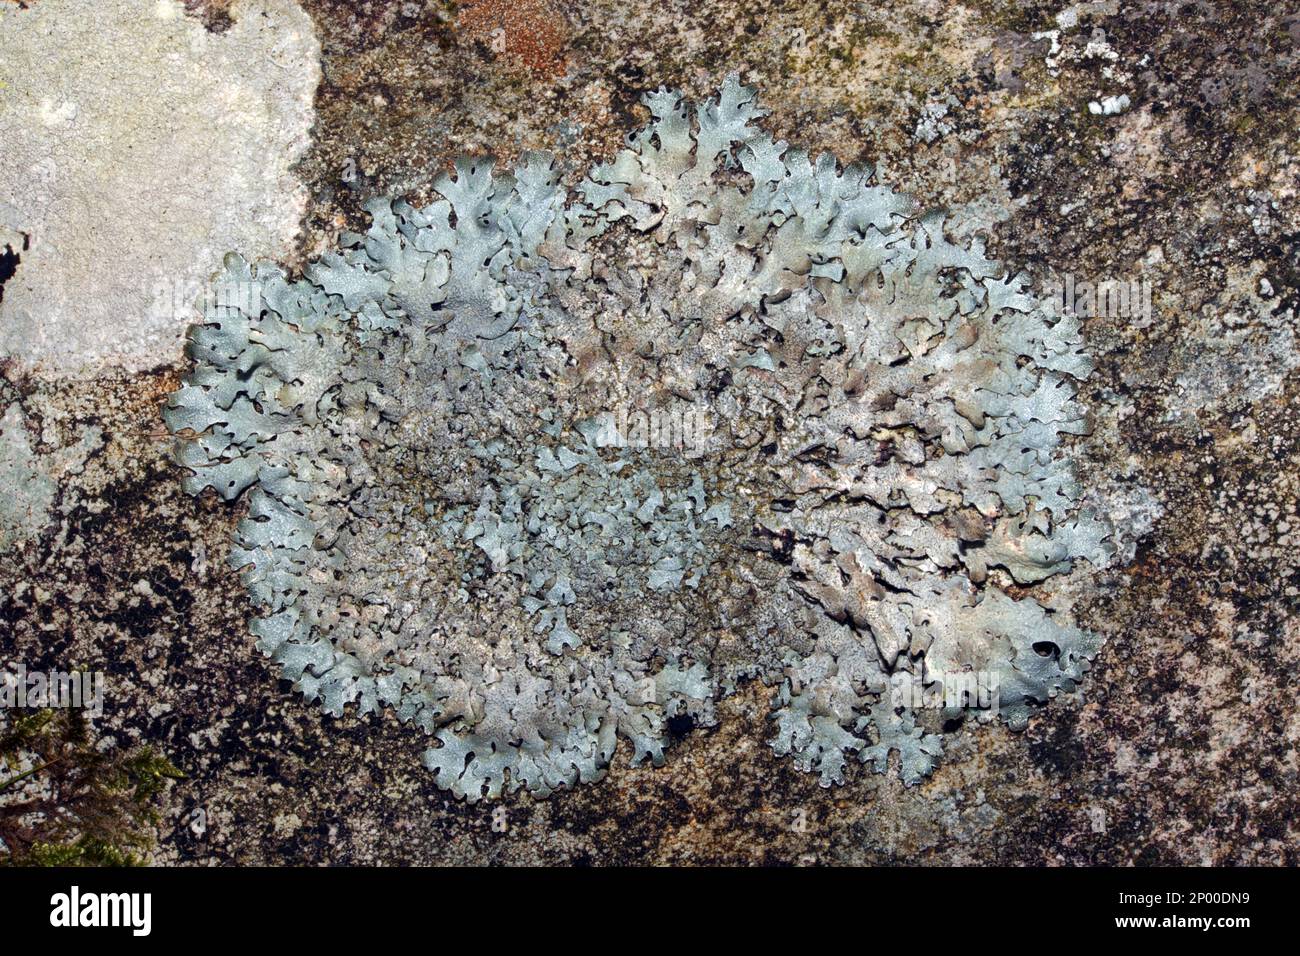 Parmelia saxatilis è comune su rocce e alberi arroccati acidi. È ampiamente distribuito nelle zone temperate e boreali dell'emisfero settentrionale. Foto Stock